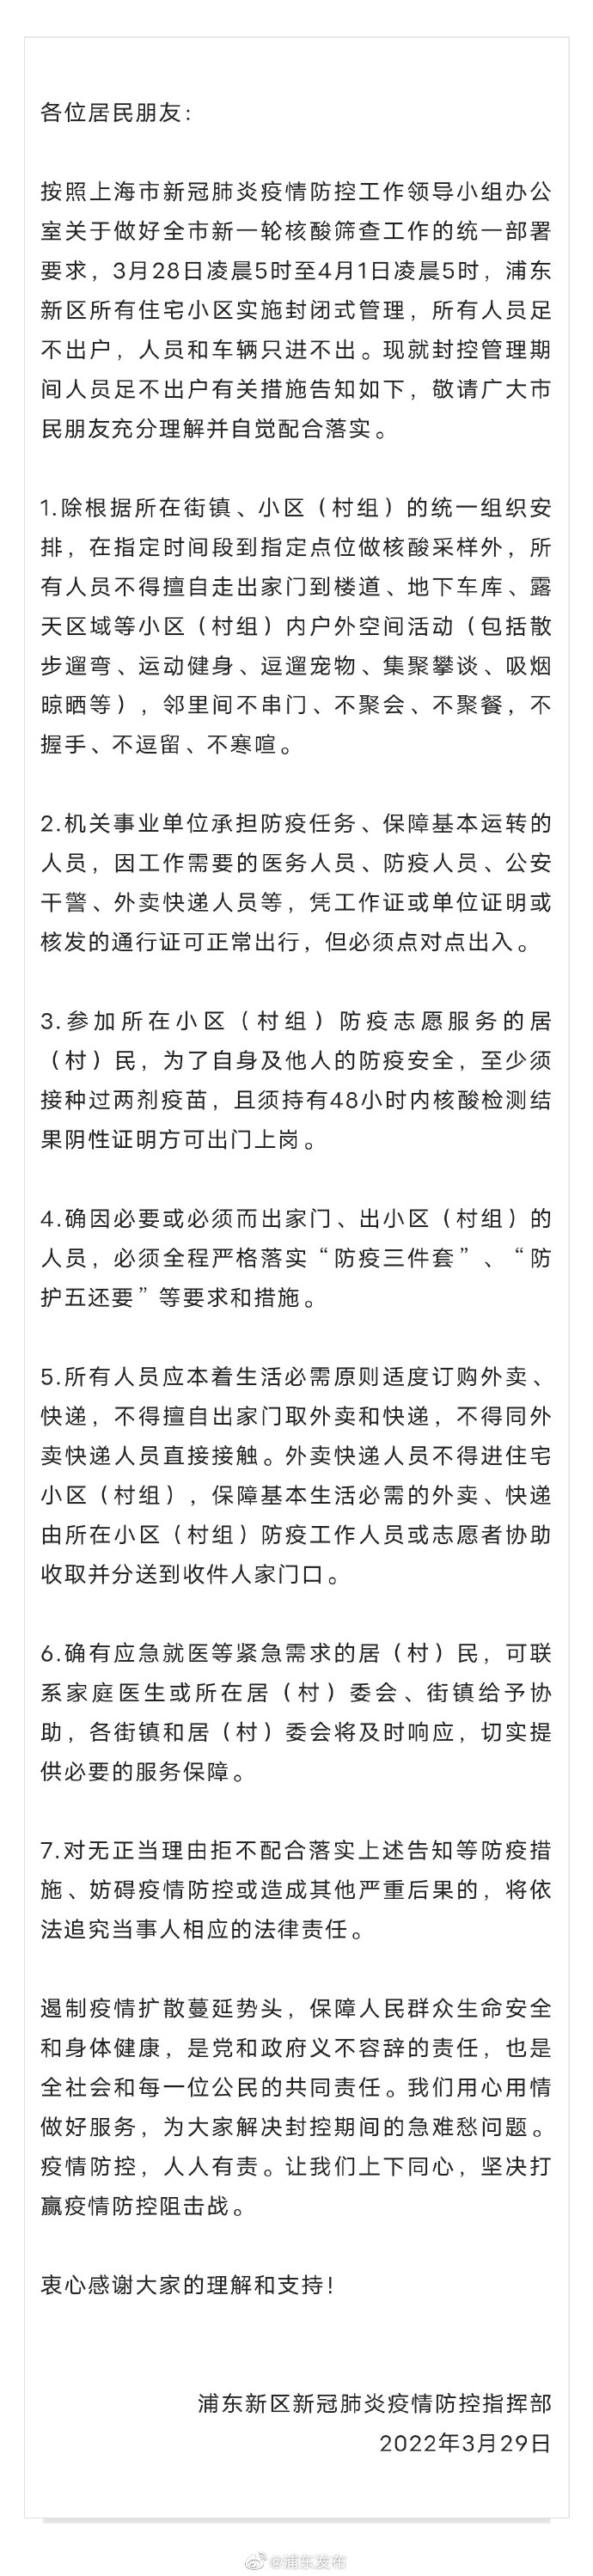 上海浦东新区所有住宅小区实施封闭式管理